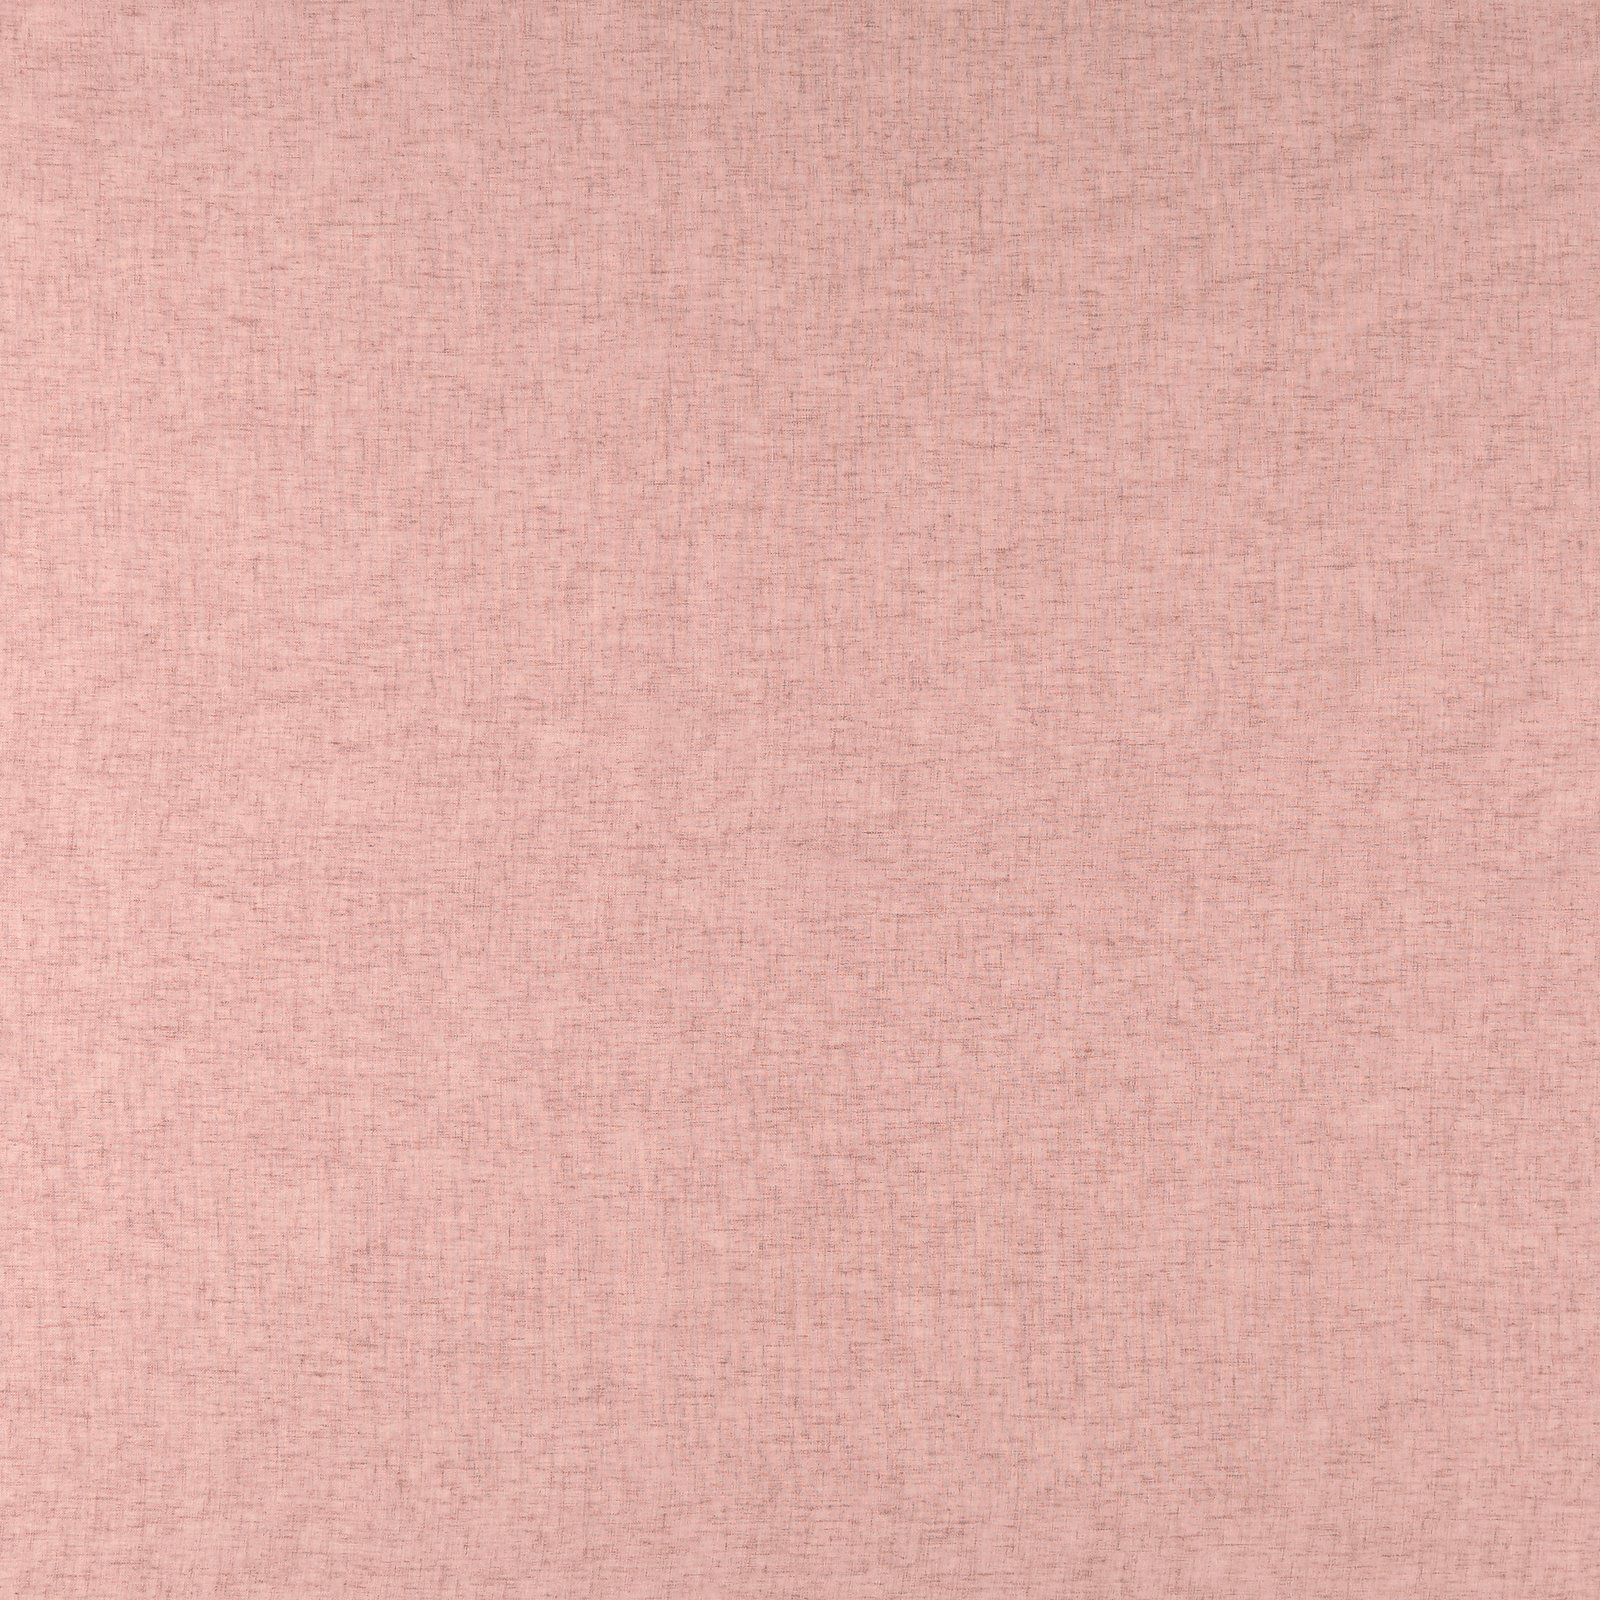 Voile dark rose polyester/linen blend 835181_pack_solid